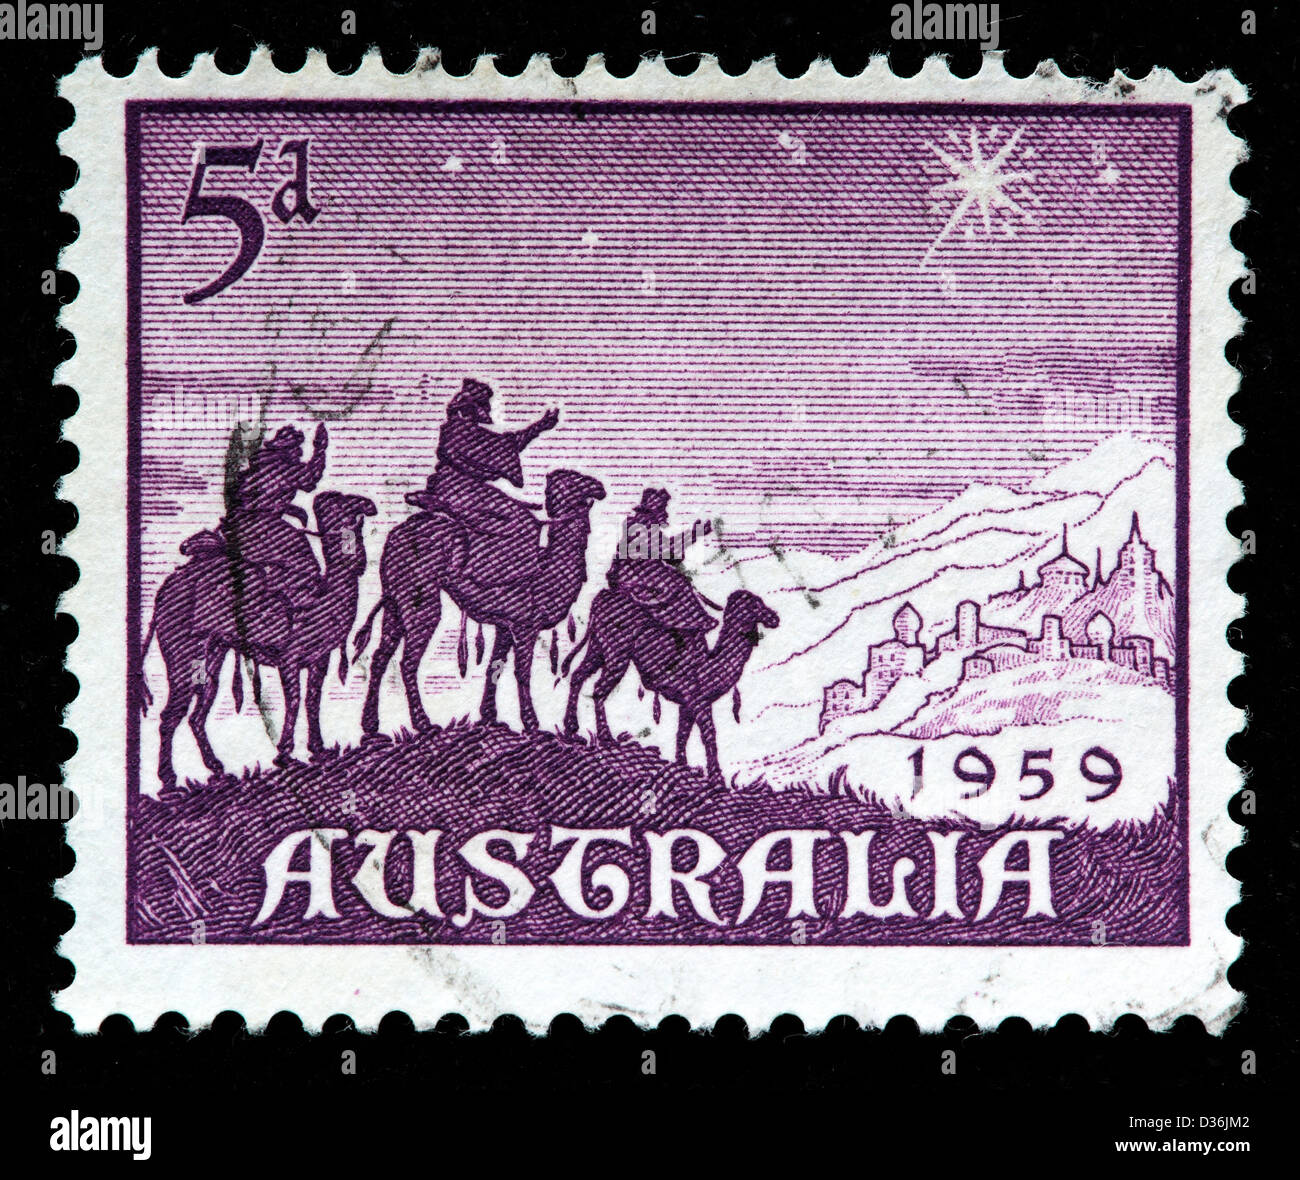 Ansatz der Könige, Briefmarke, Australien, 1959 Stockfoto